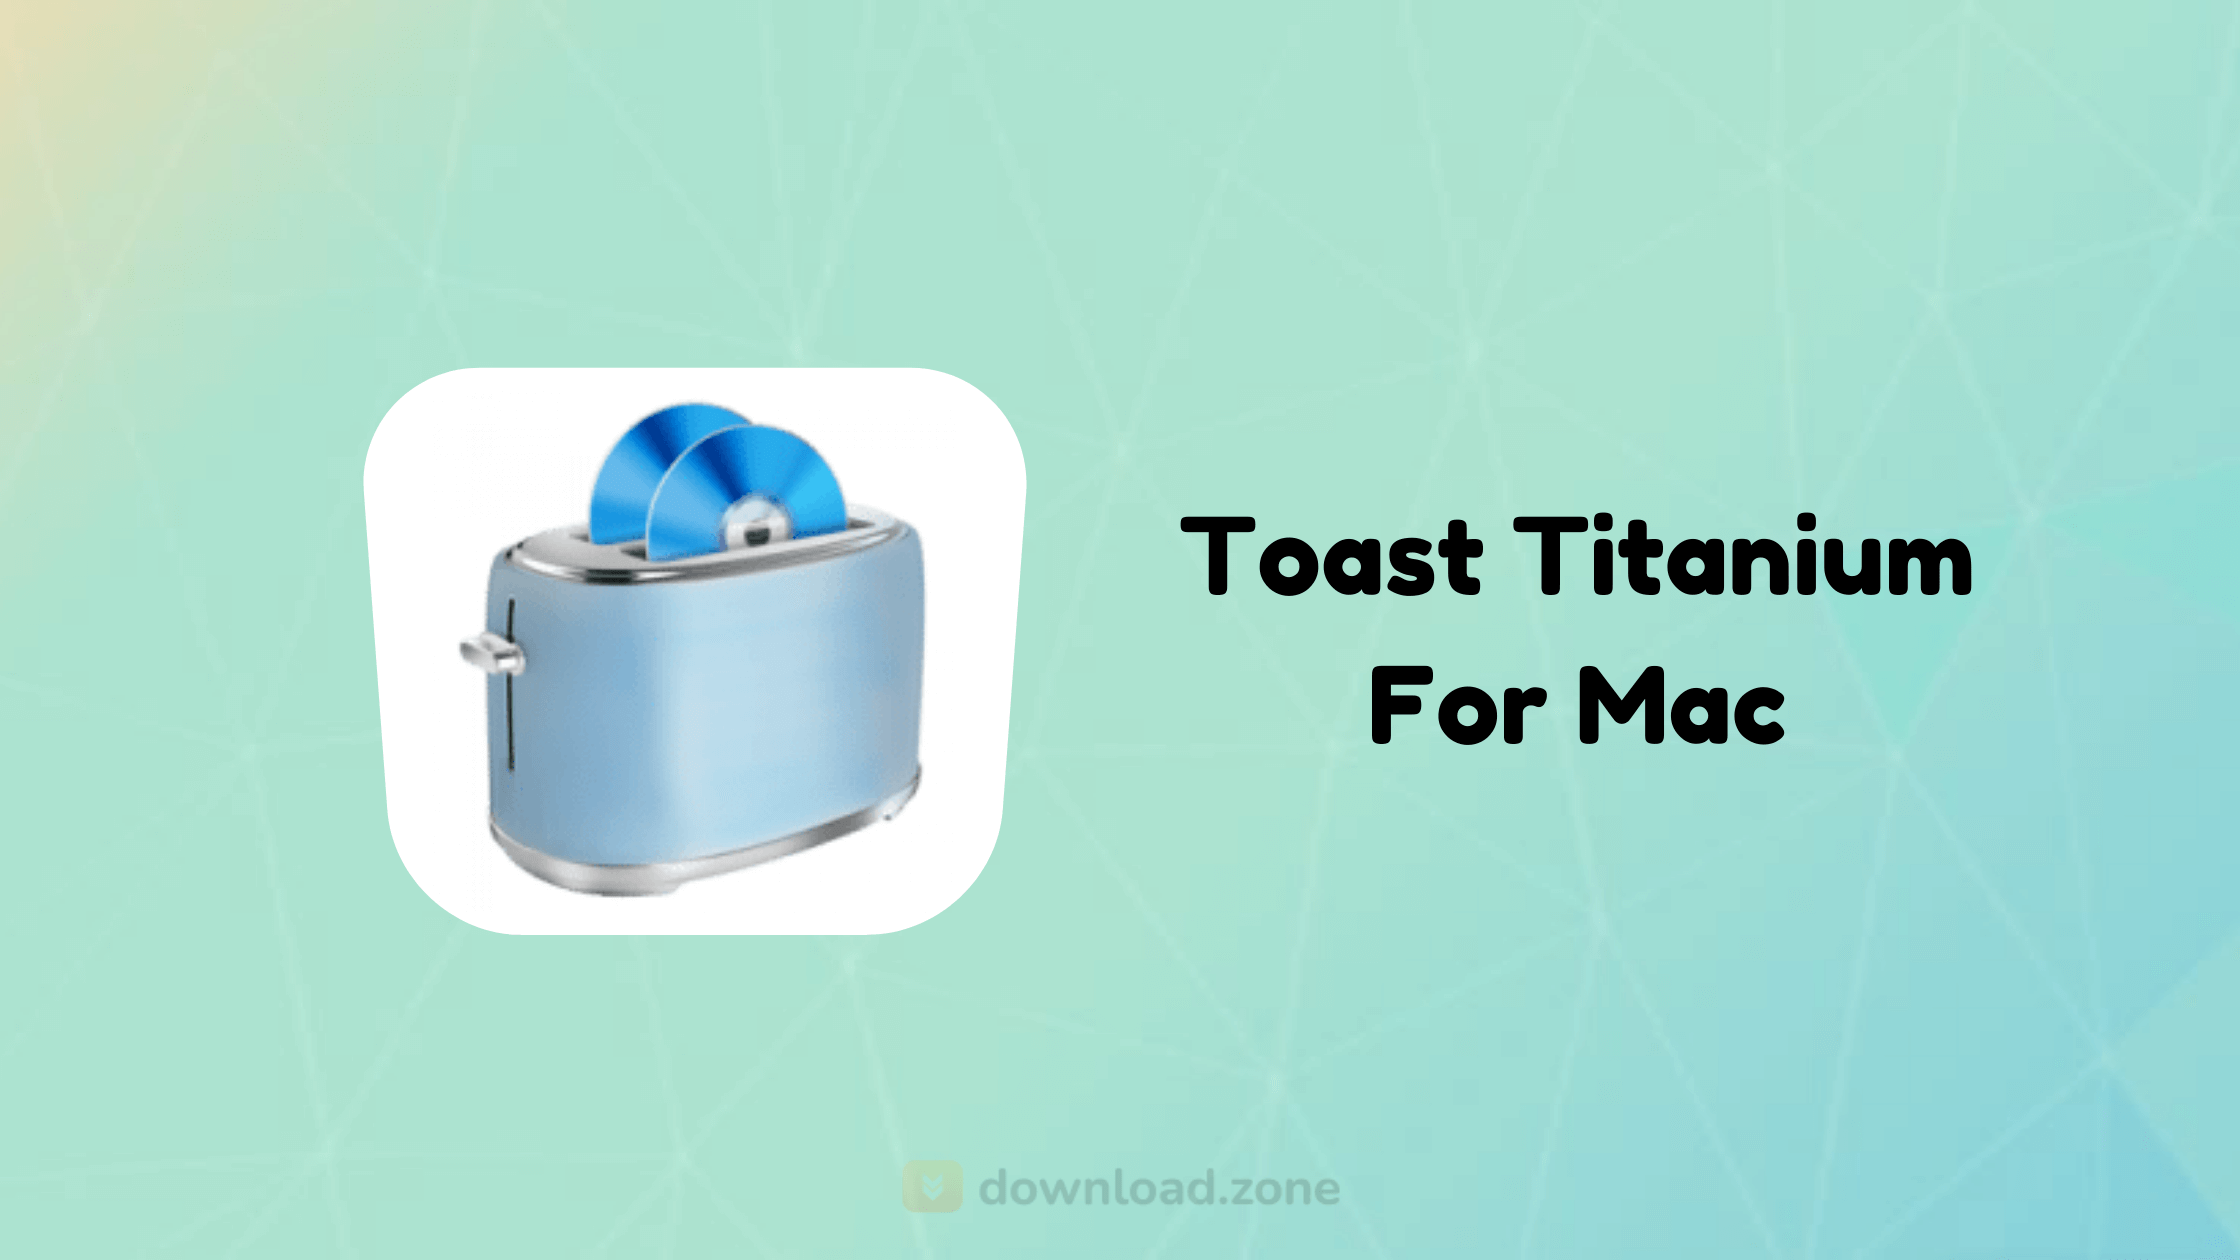 download toast titanium 10 for mac free